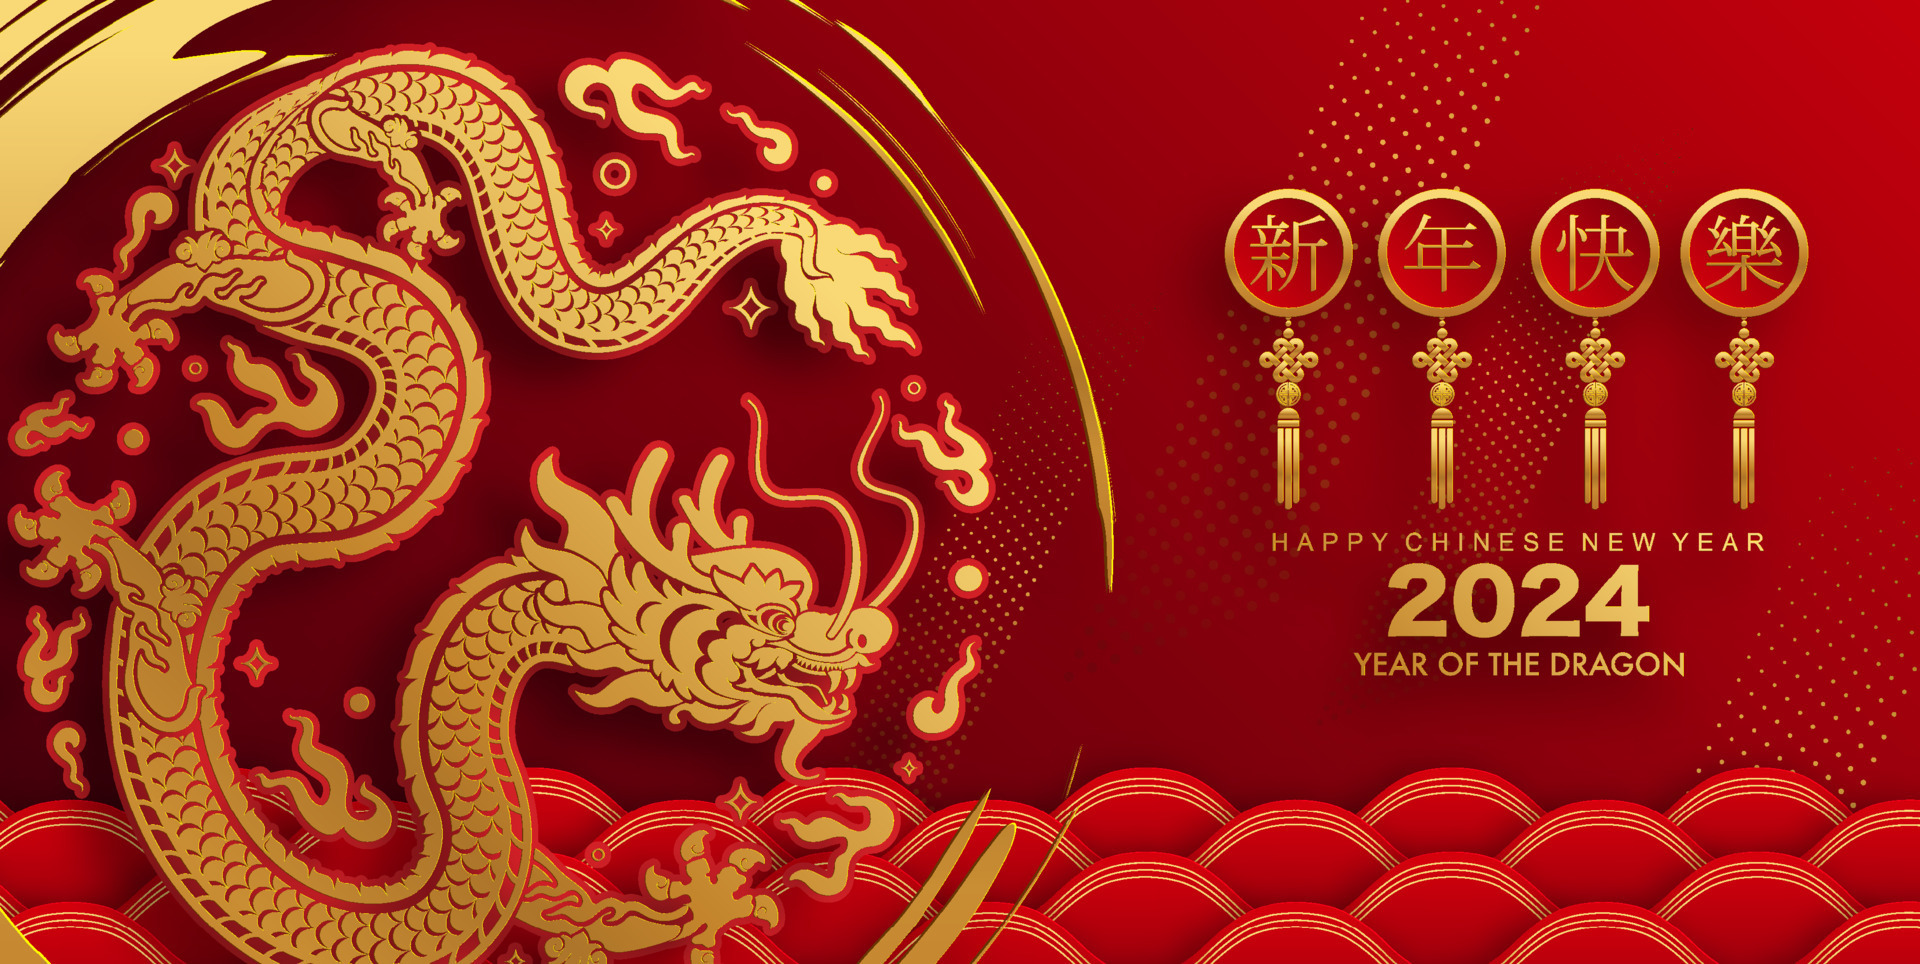 Новый год 2024 день рождения. Китайский новый год дракона 2024. Китайский новый год 2024. Китайский новый год в 2024 году. Дракон 2024.